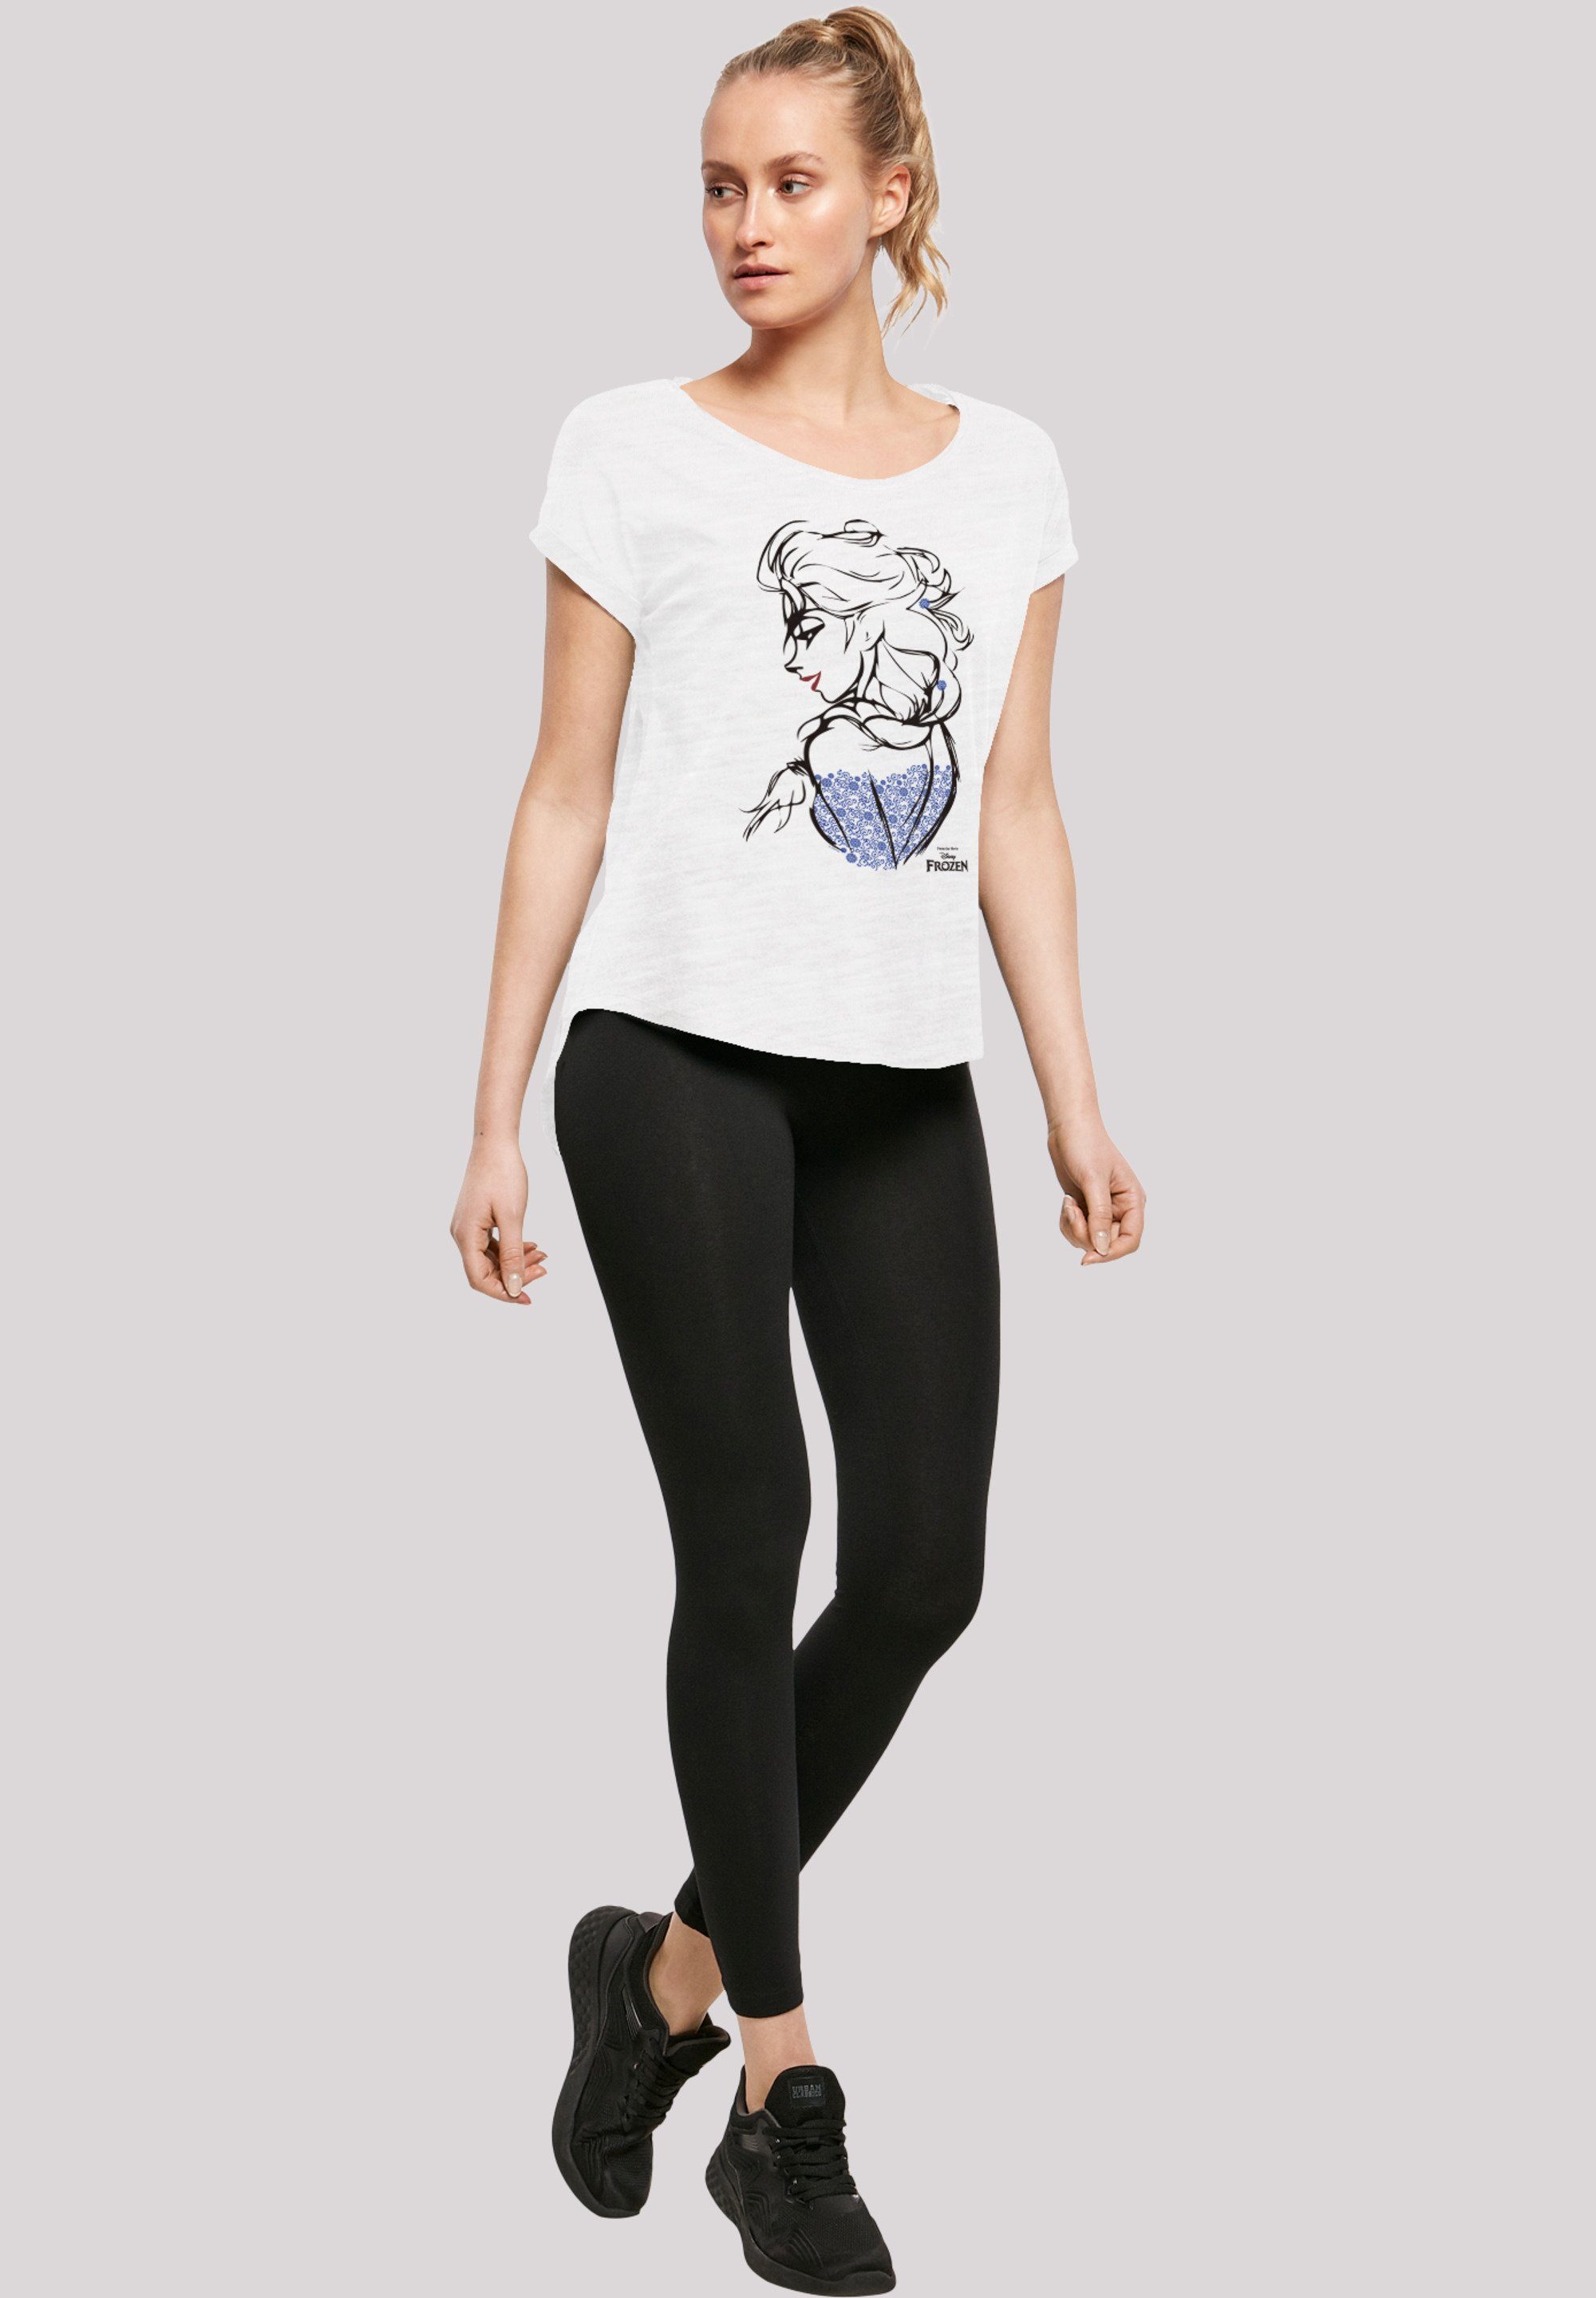 Print Frozen Mono Elsa T-Shirt Sketch F4NT4STIC